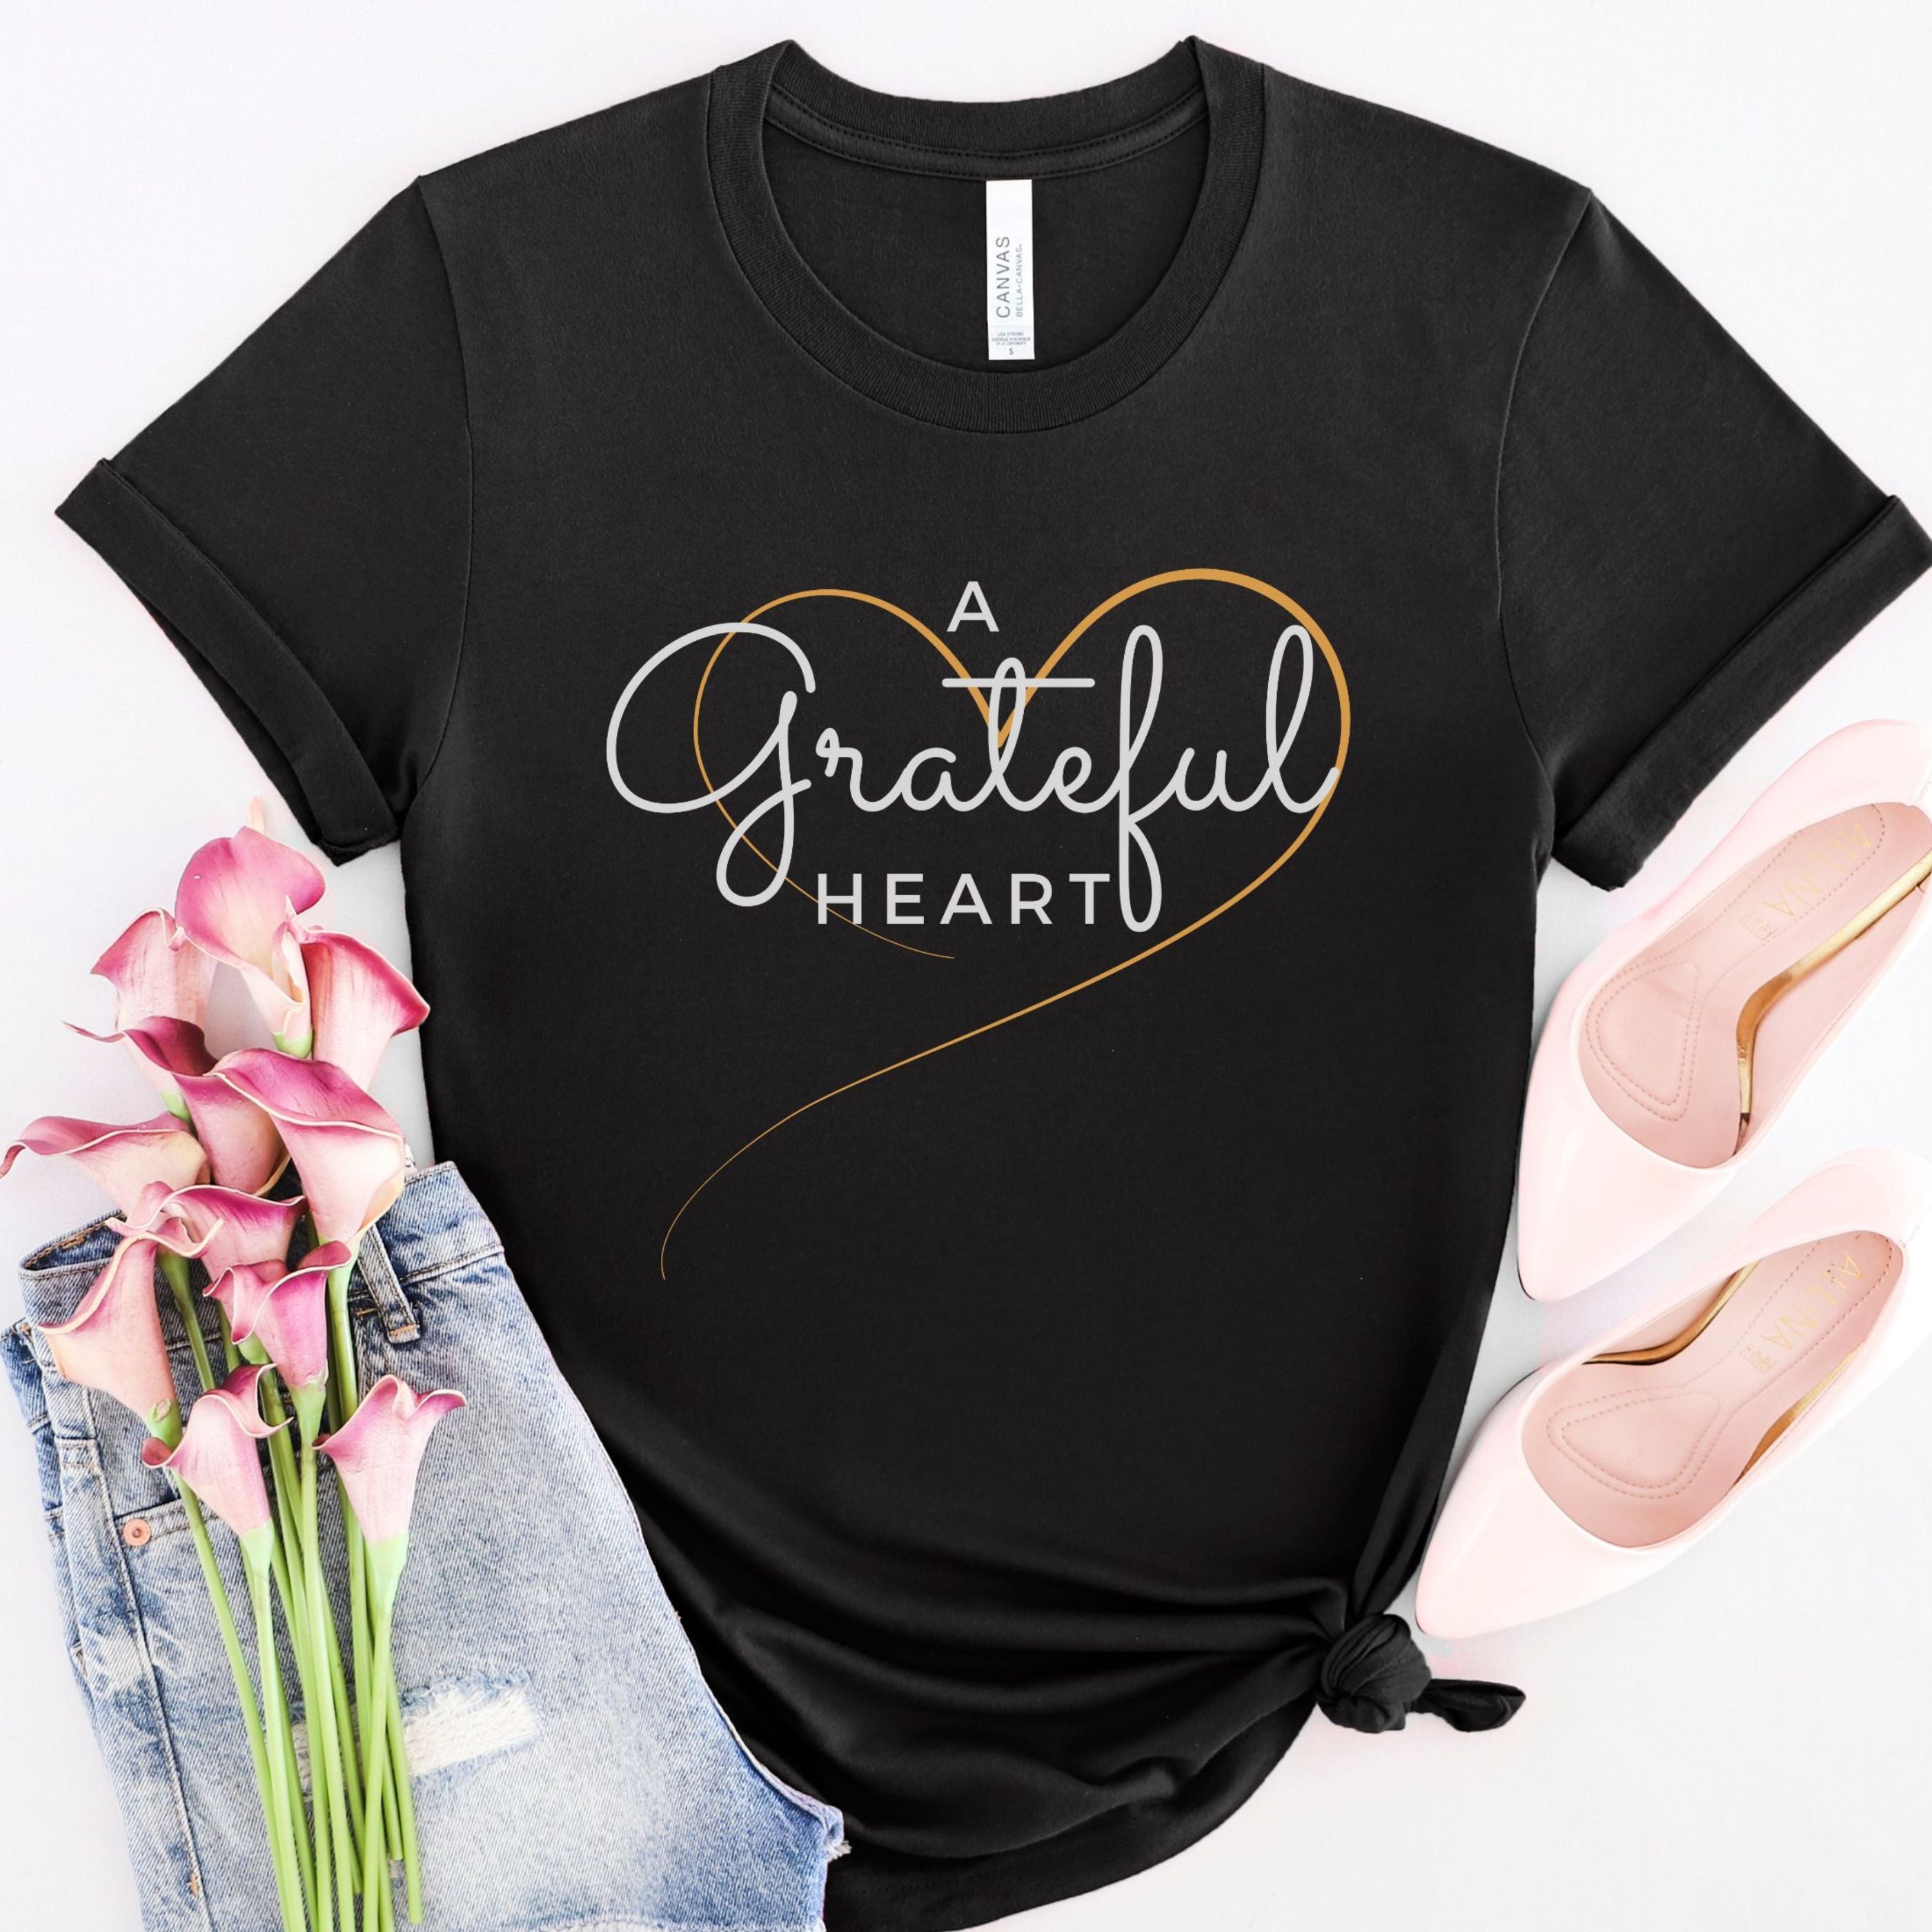 A Grateful Heart Shirt